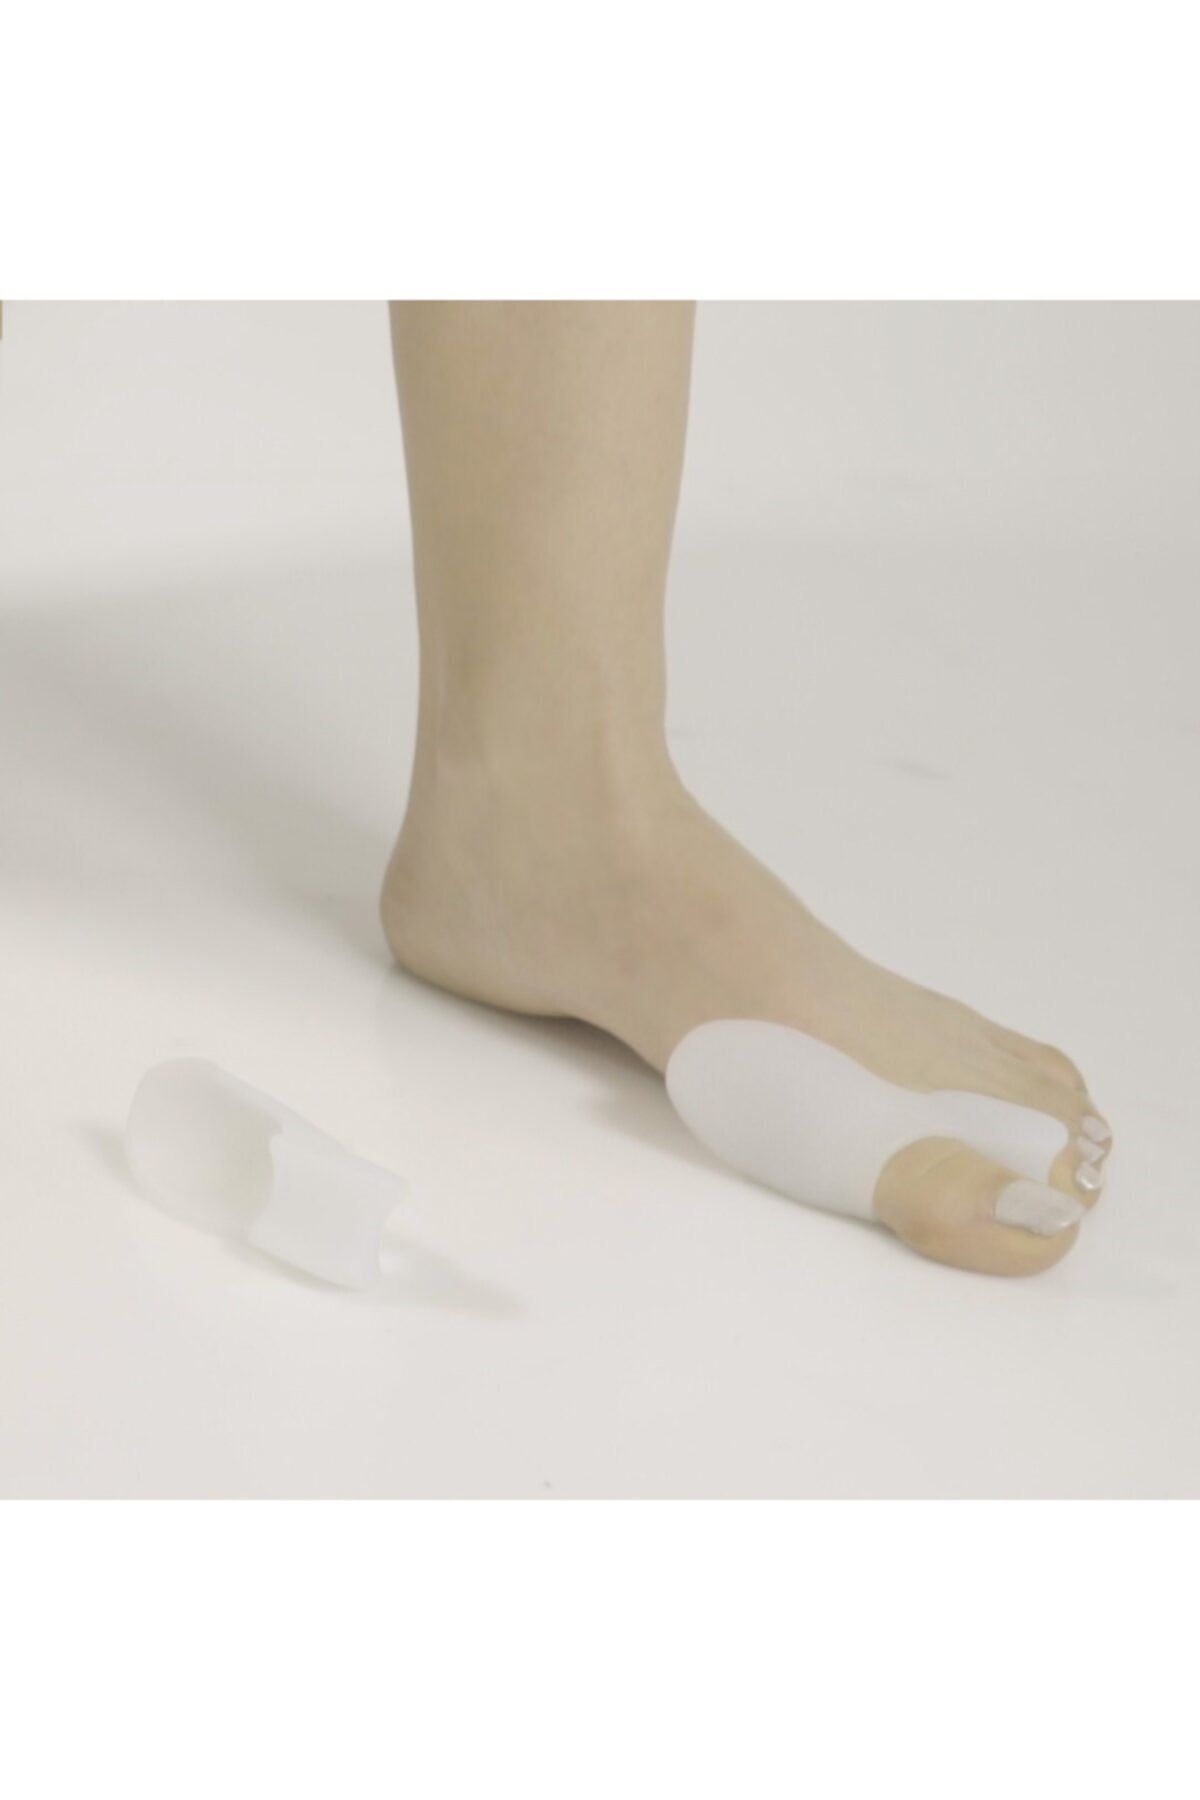 başarı ortopedi Silikon Bunyon Ayak Parmak Makara Ayak Kemik Çıkıntısı 1 Çift